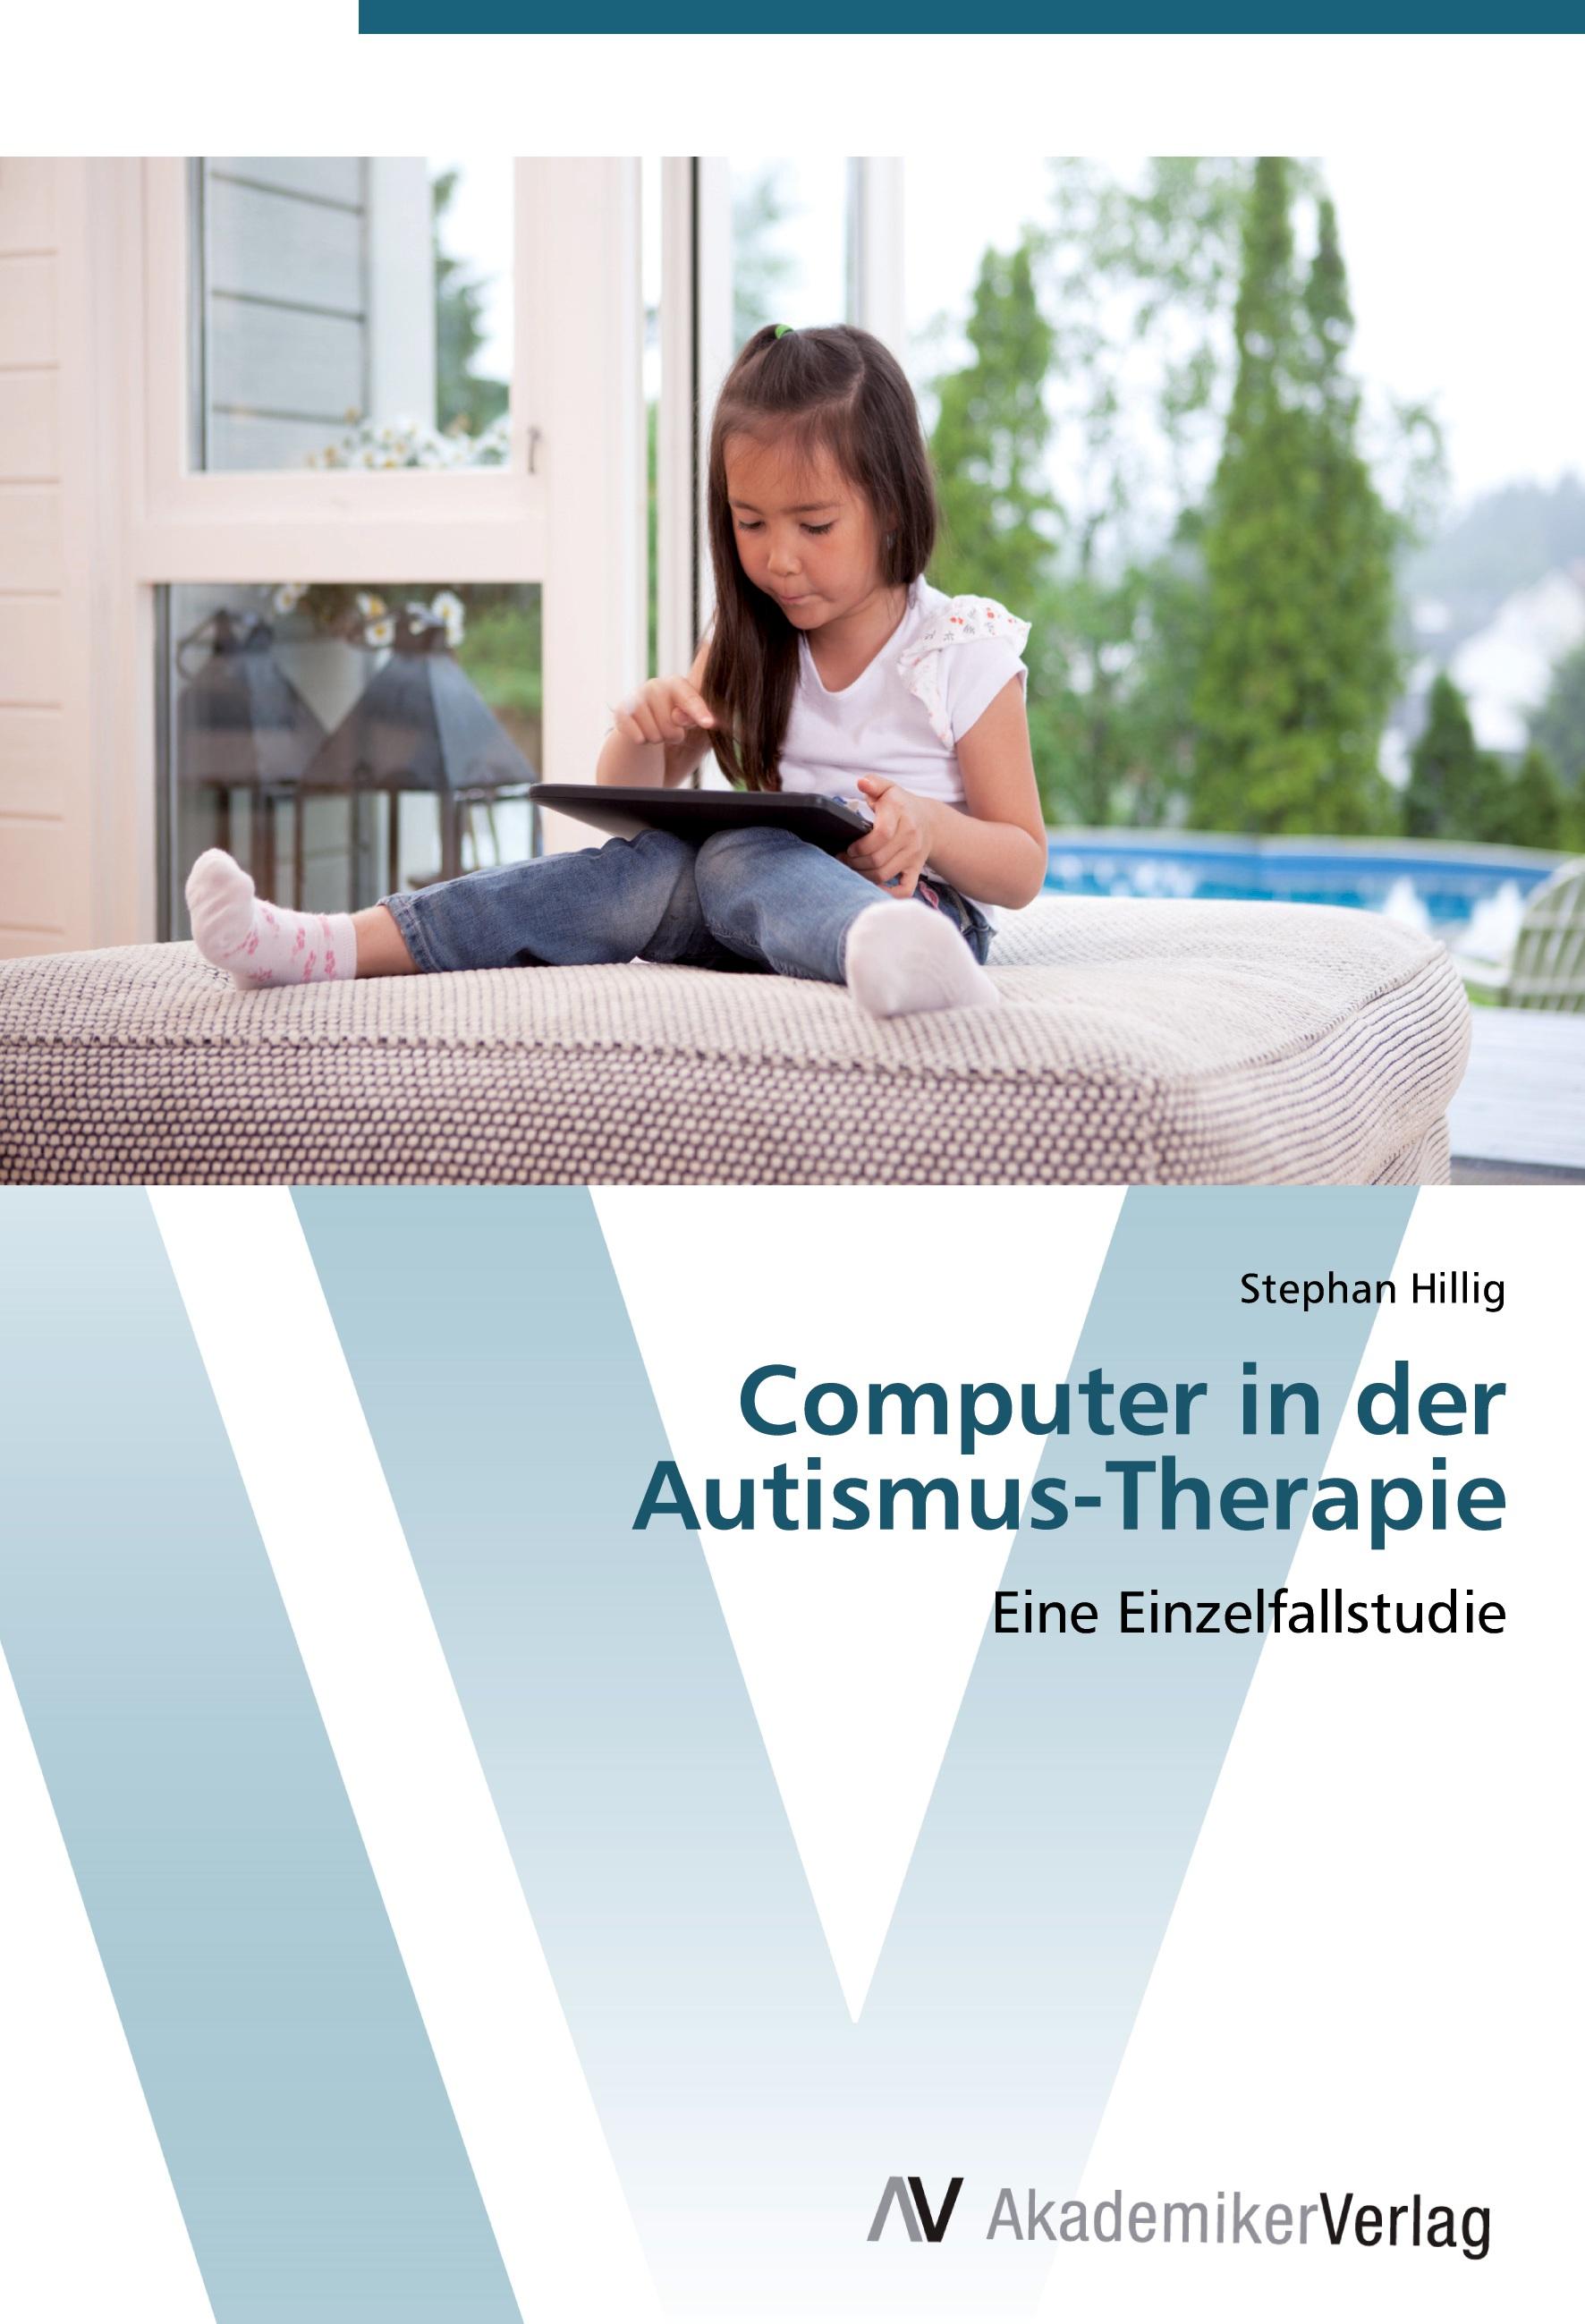 Computer in der Autismus-Therapie  Eine Einzelfallstudie  Stephan Hillig  Taschenbuch  Paperback  Deutsch  2012 - Hillig, Stephan